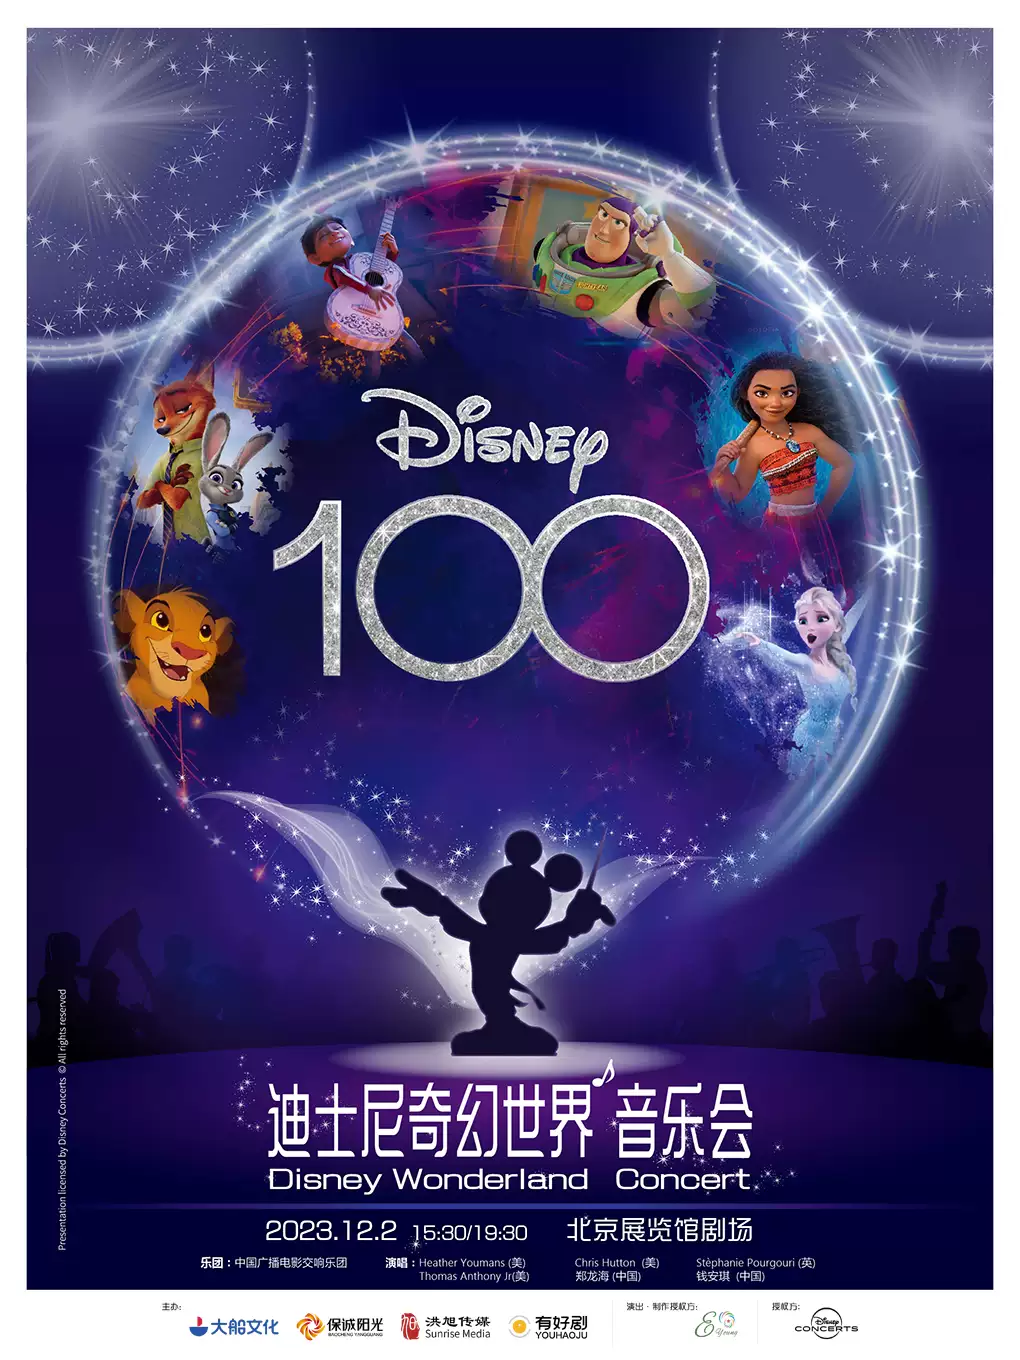 【北京】 《迪士尼100 周年奇幻世界音乐会》Disney Wonderland Concert